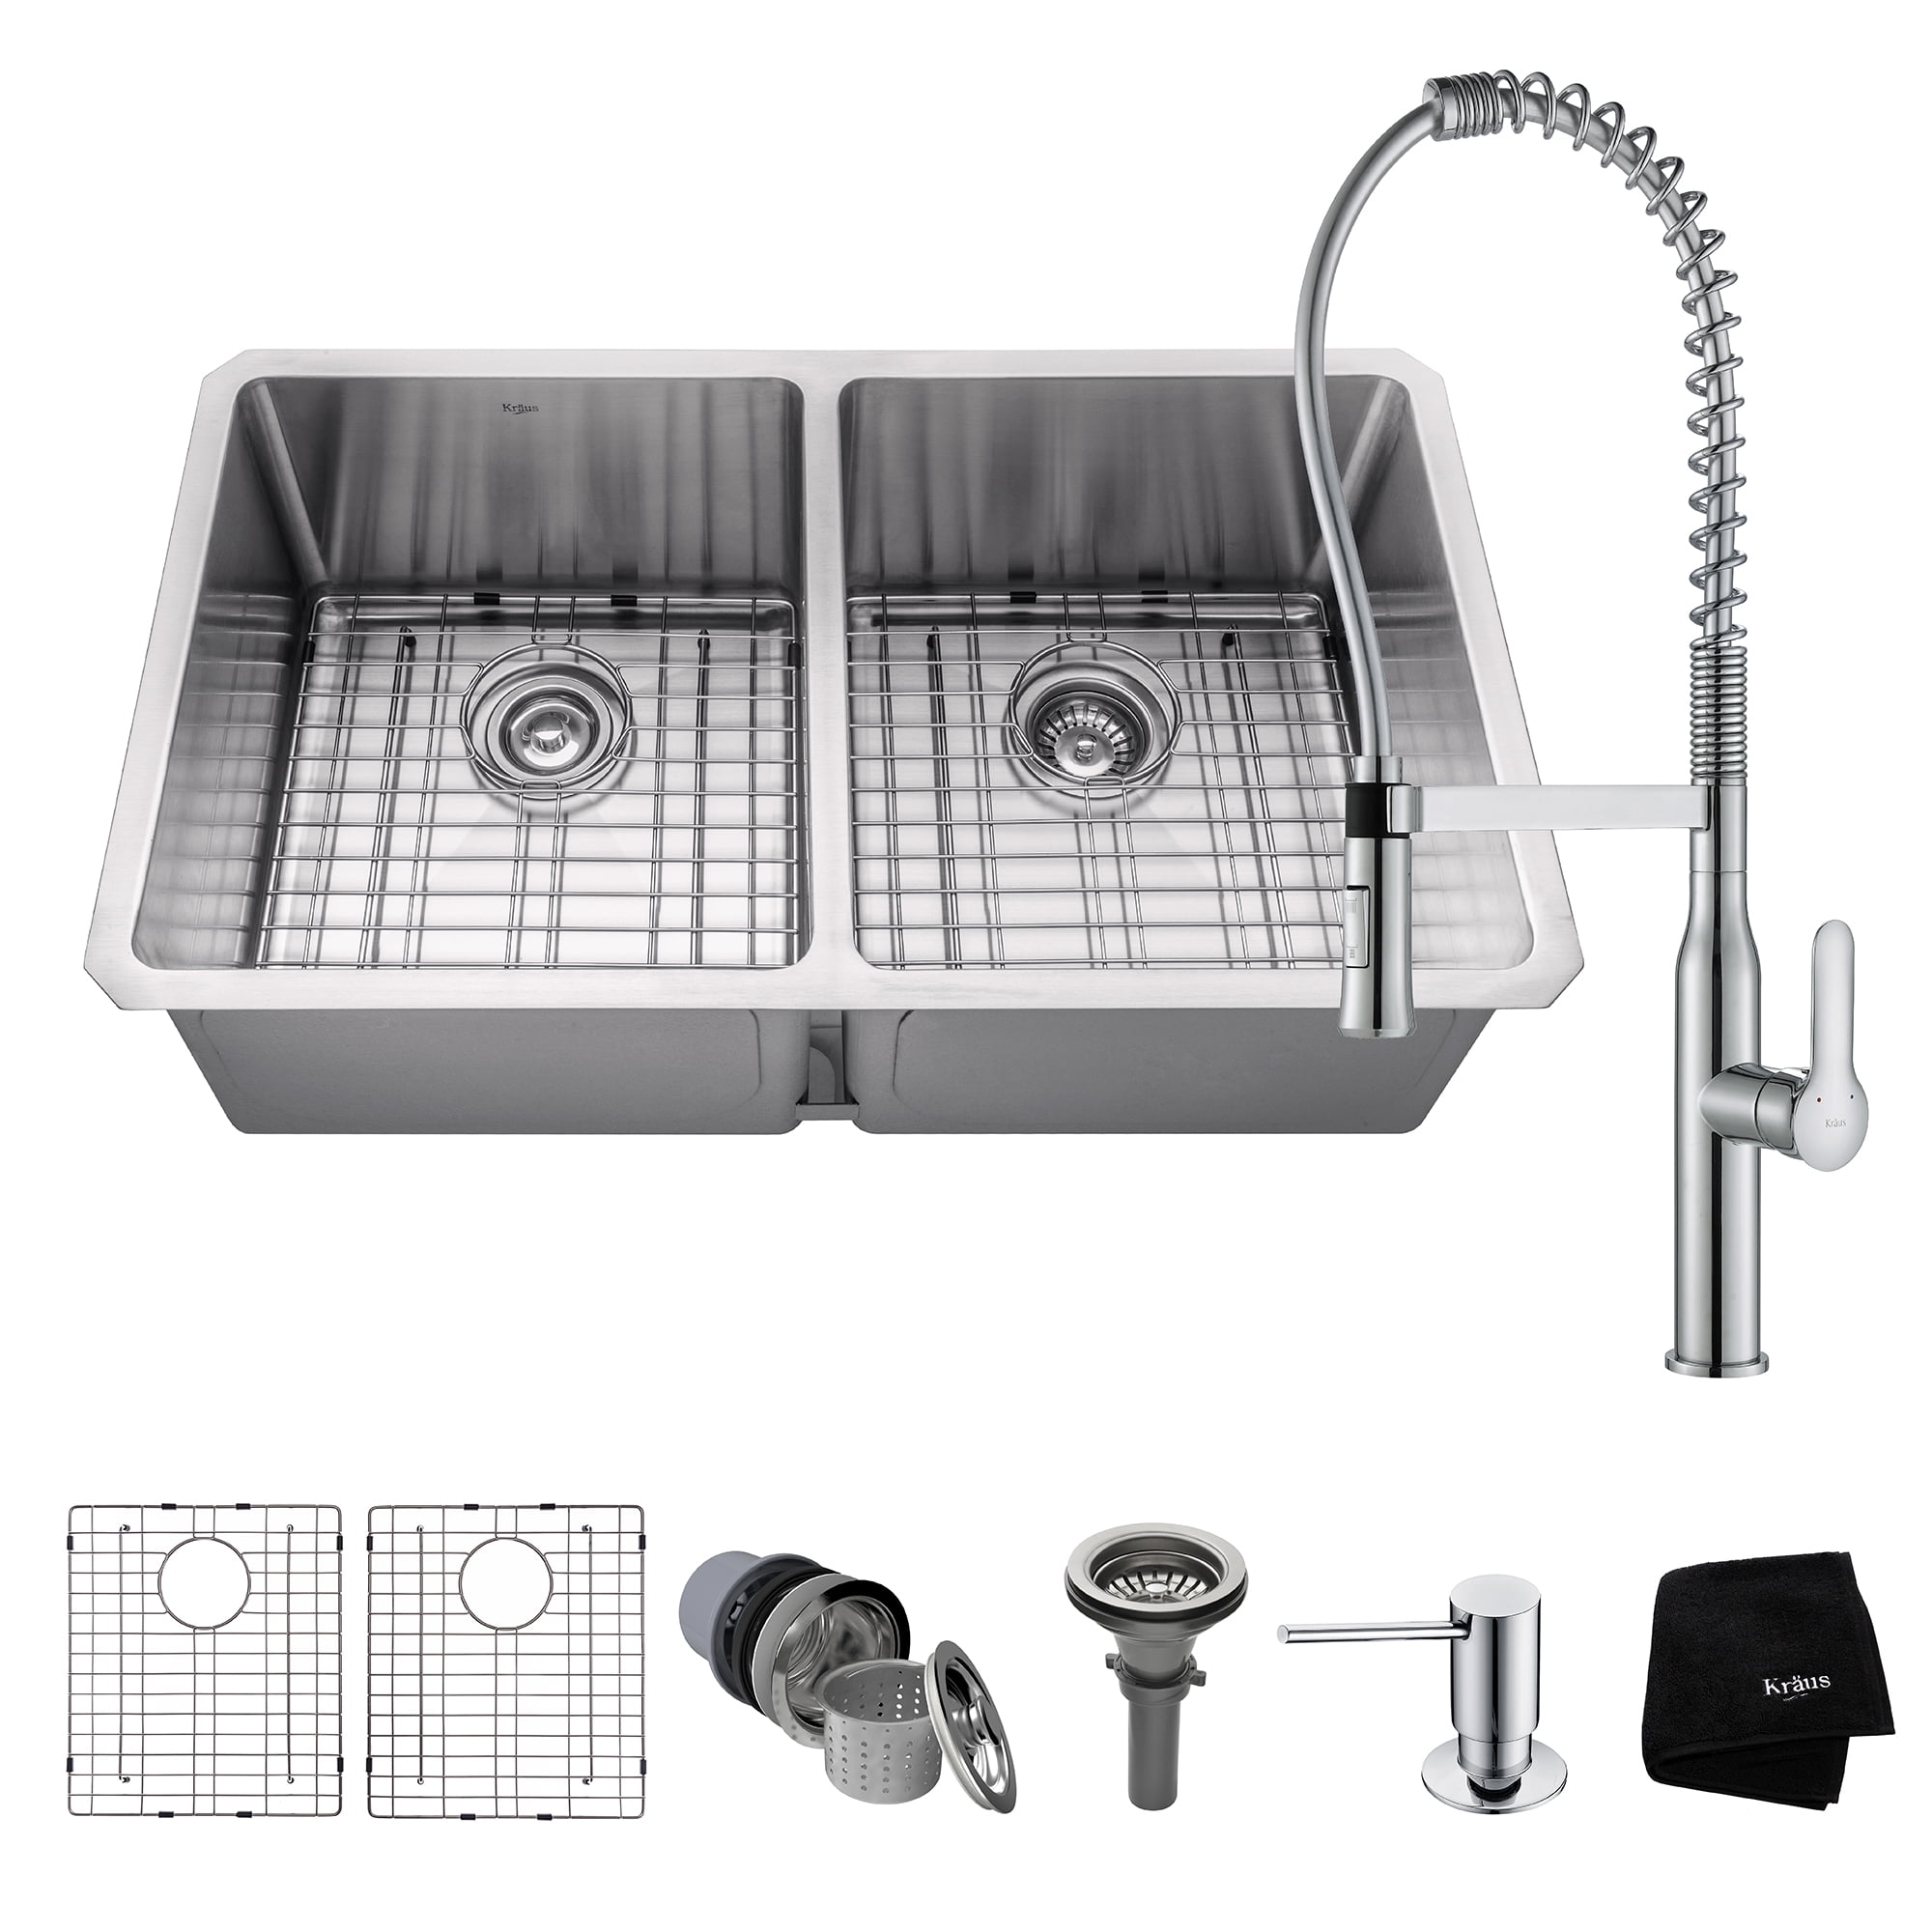 Primart 33X19 Inch 16 Gauge double 50//50 Undermount stainless steel kitchen sink